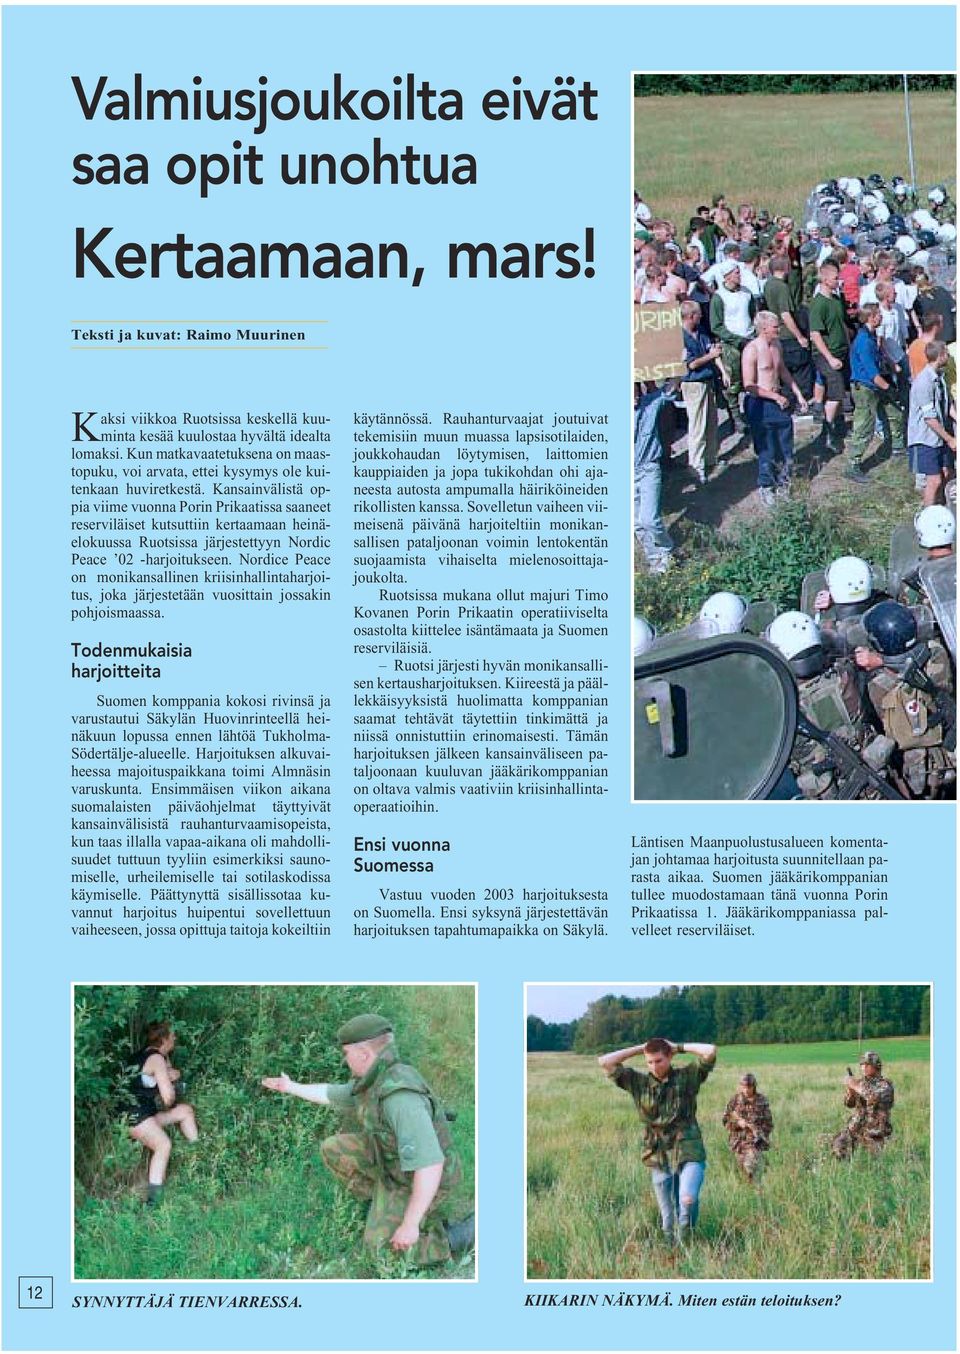 Kansainvälistä oppia viime vuonna Porin Prikaatissa saaneet reserviläiset kutsuttiin kertaamaan heinäelokuussa Ruotsissa järjestettyyn Nordic Peace 02 -harjoitukseen.